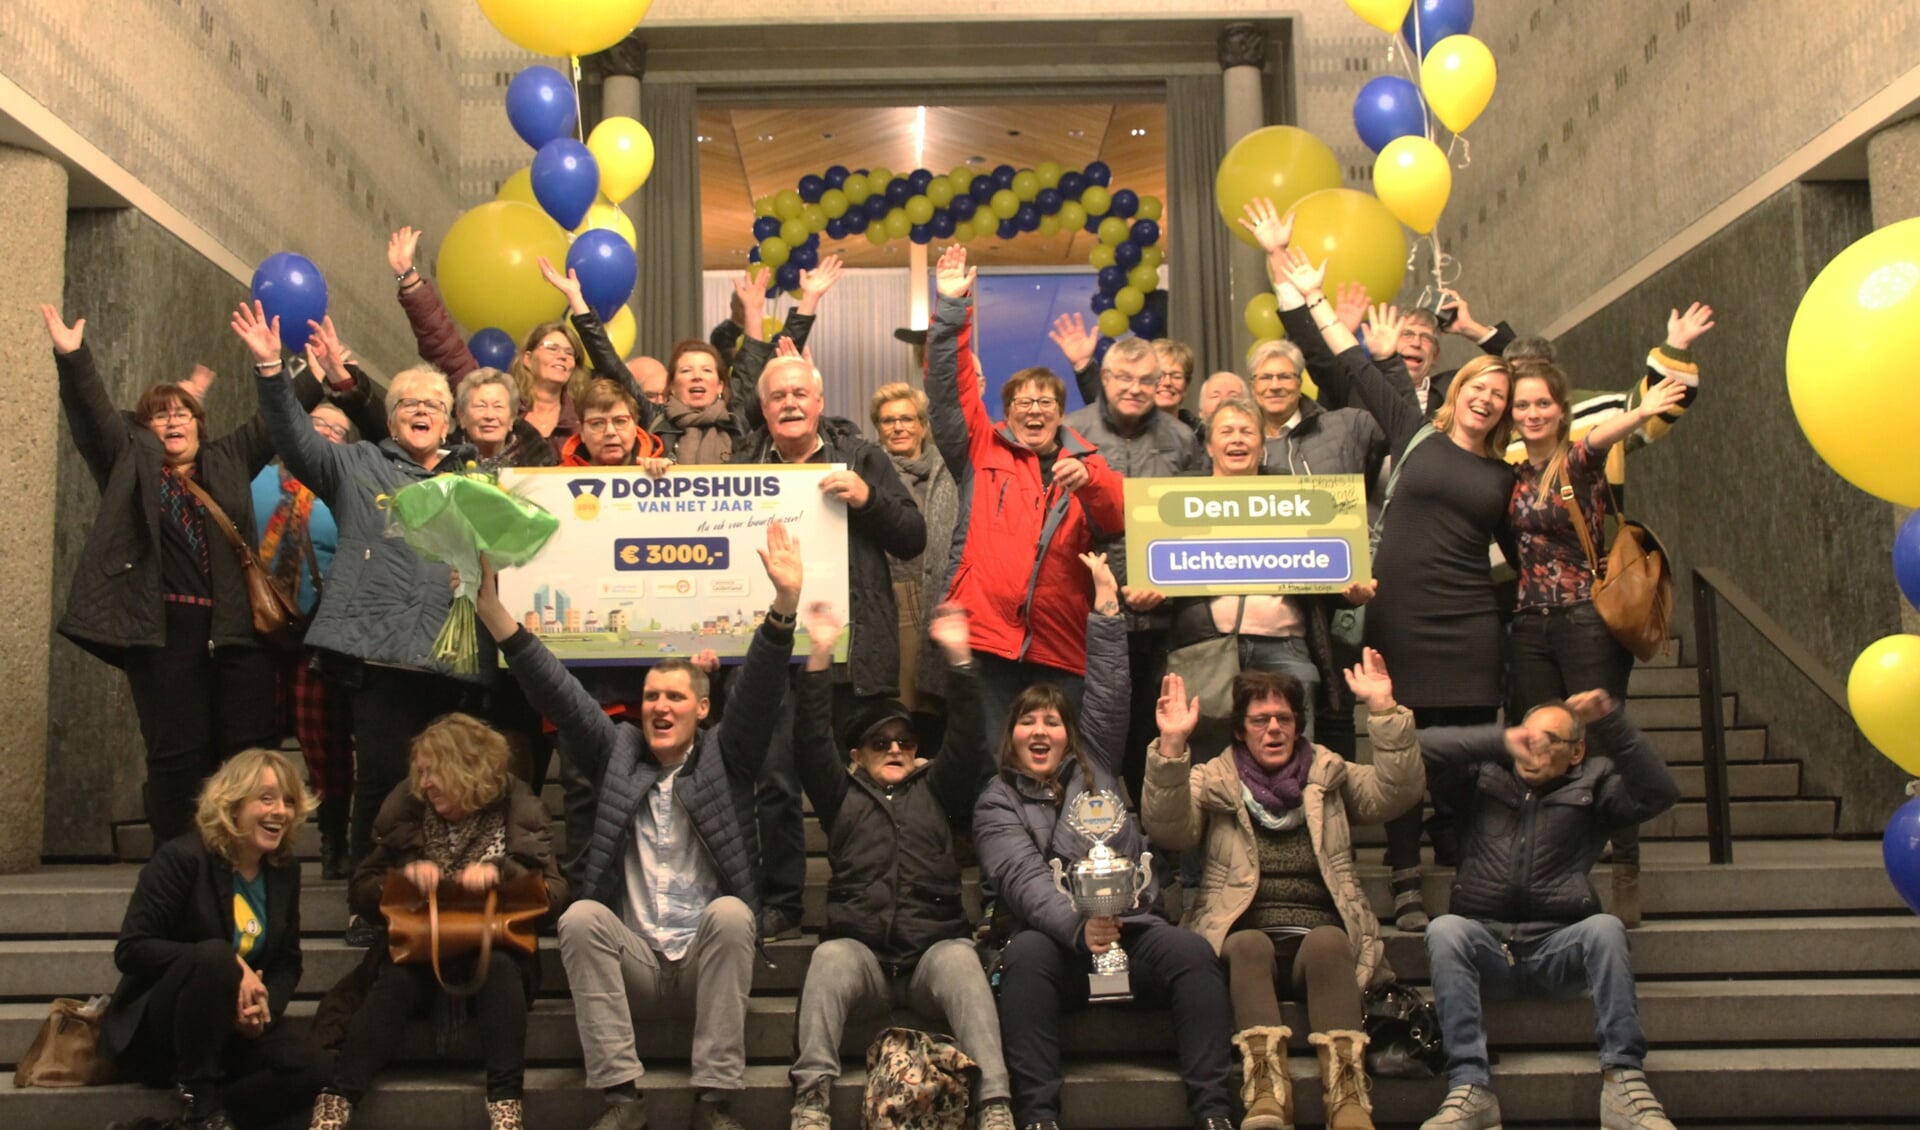 Uitzinnige vreugde bij de Lichtenvoordse delegatie. Foto: Annekée Cuppers